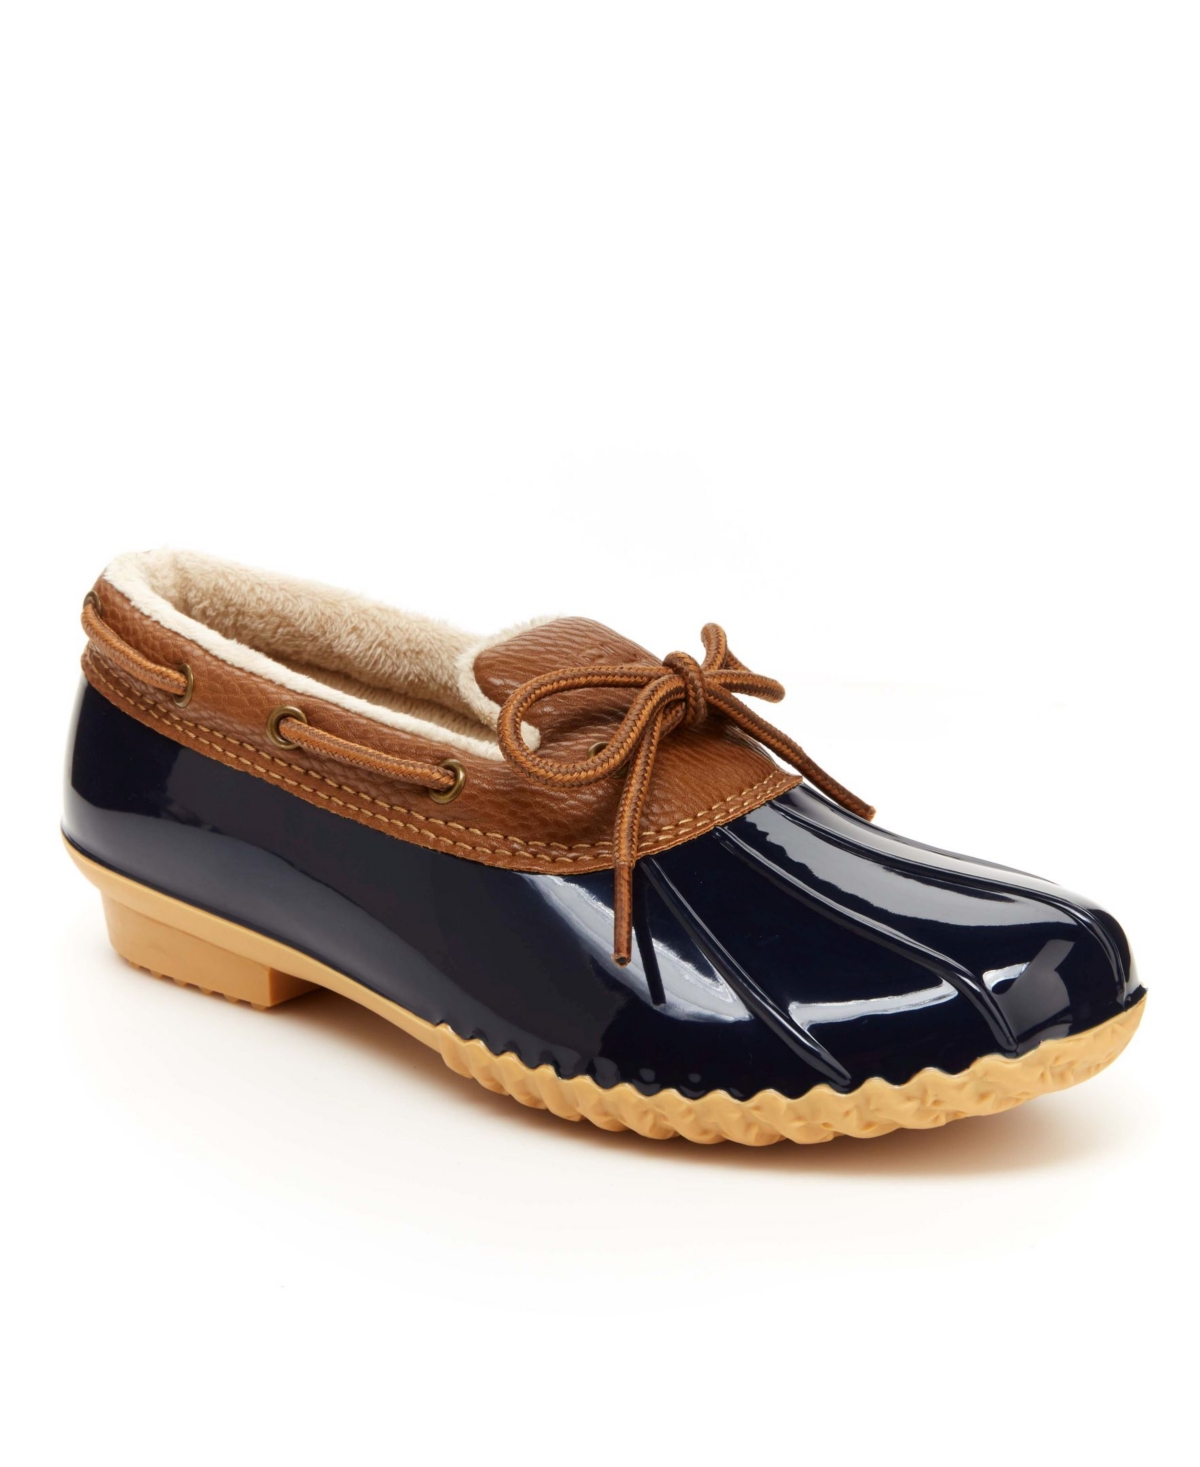 Shop Jbu Woodbury Women's Water-resistant Slip-on Shoes In Navy,tan